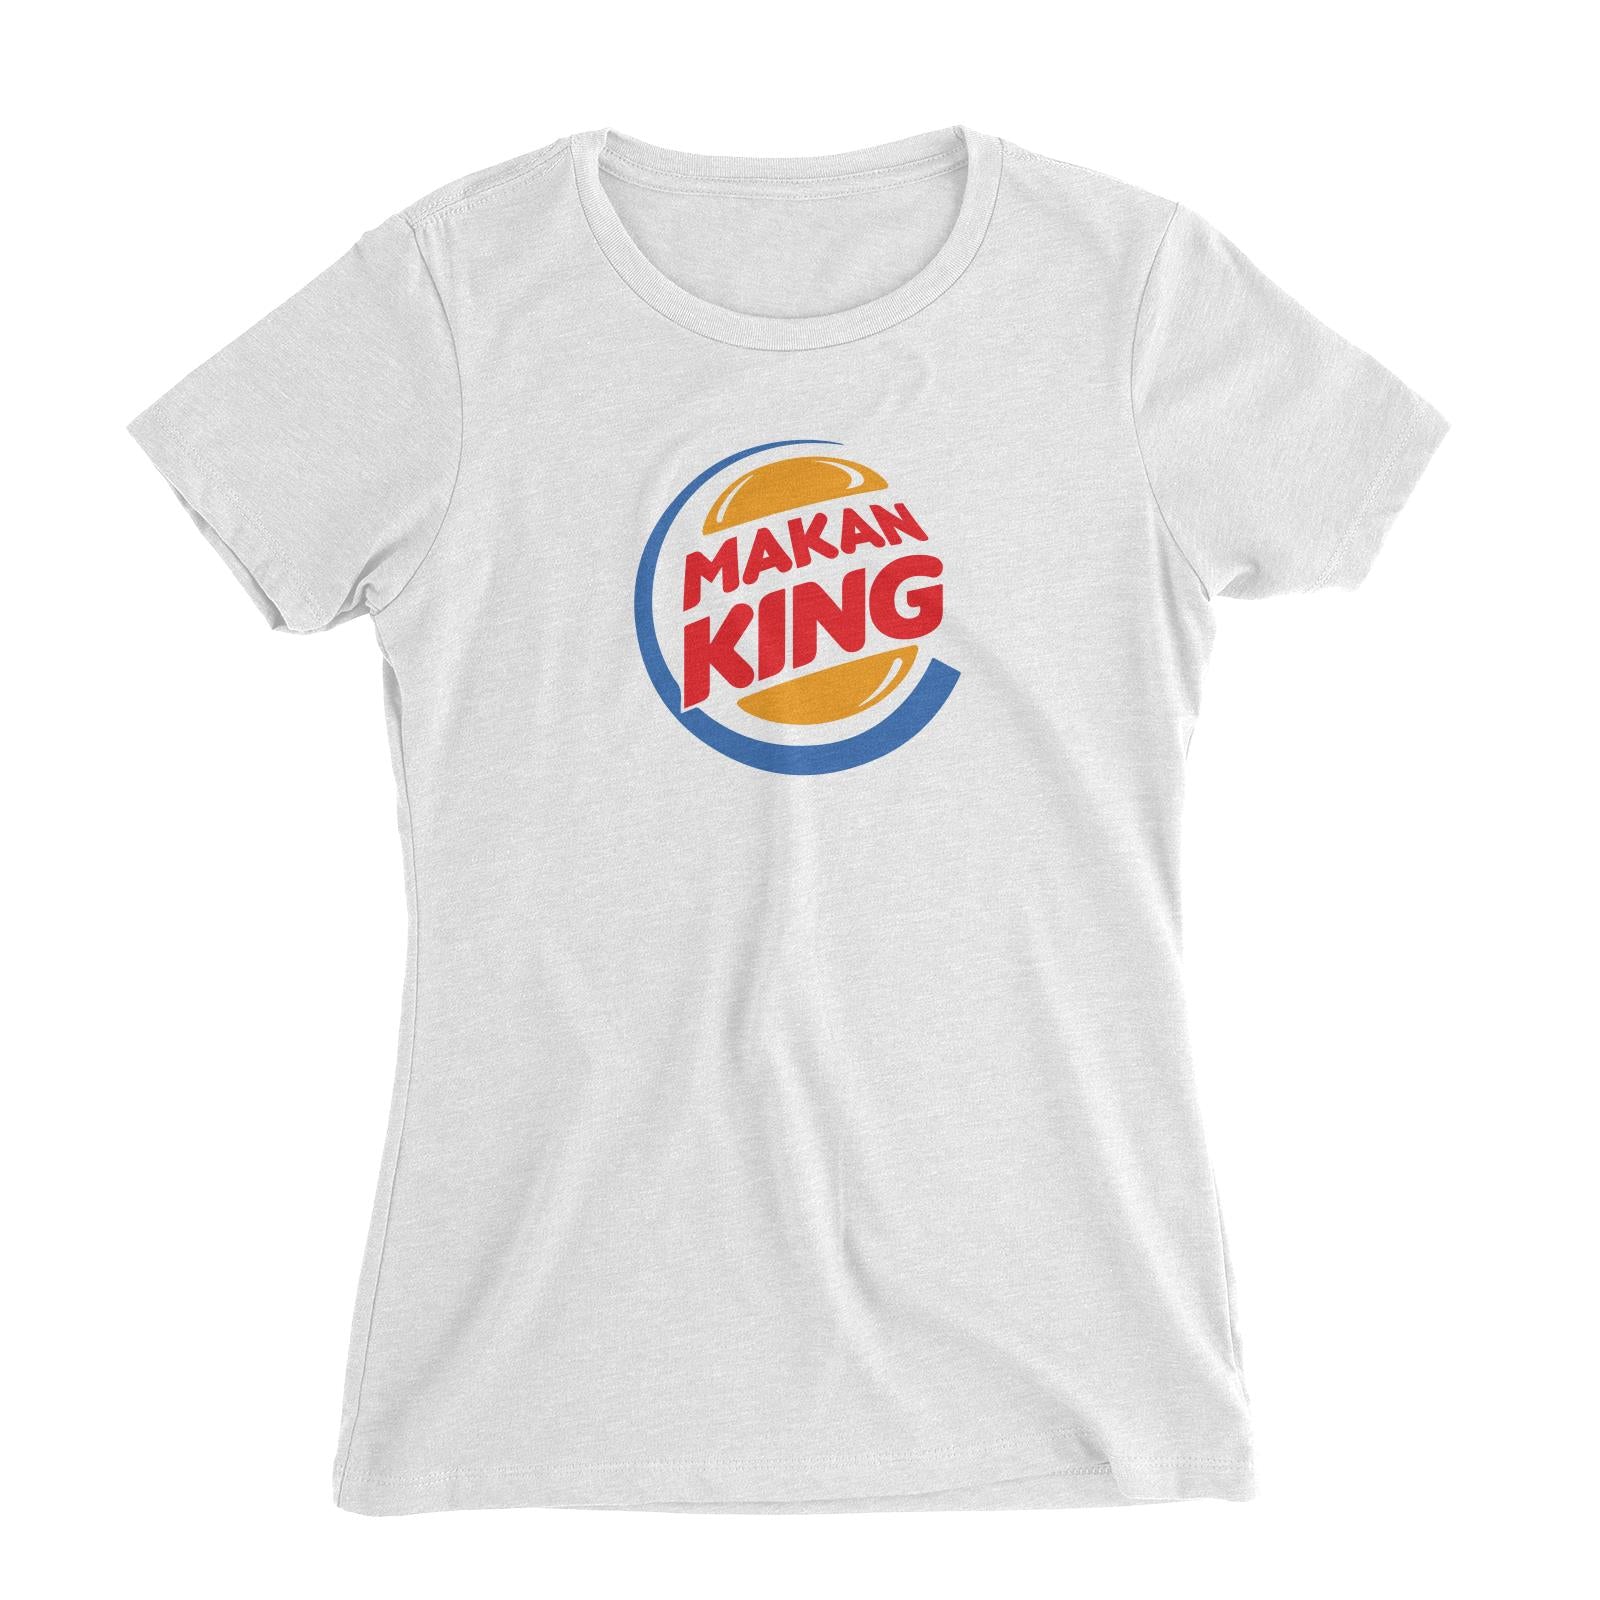 Slang Statement Makan King Women's Slim Fit T-Shirt